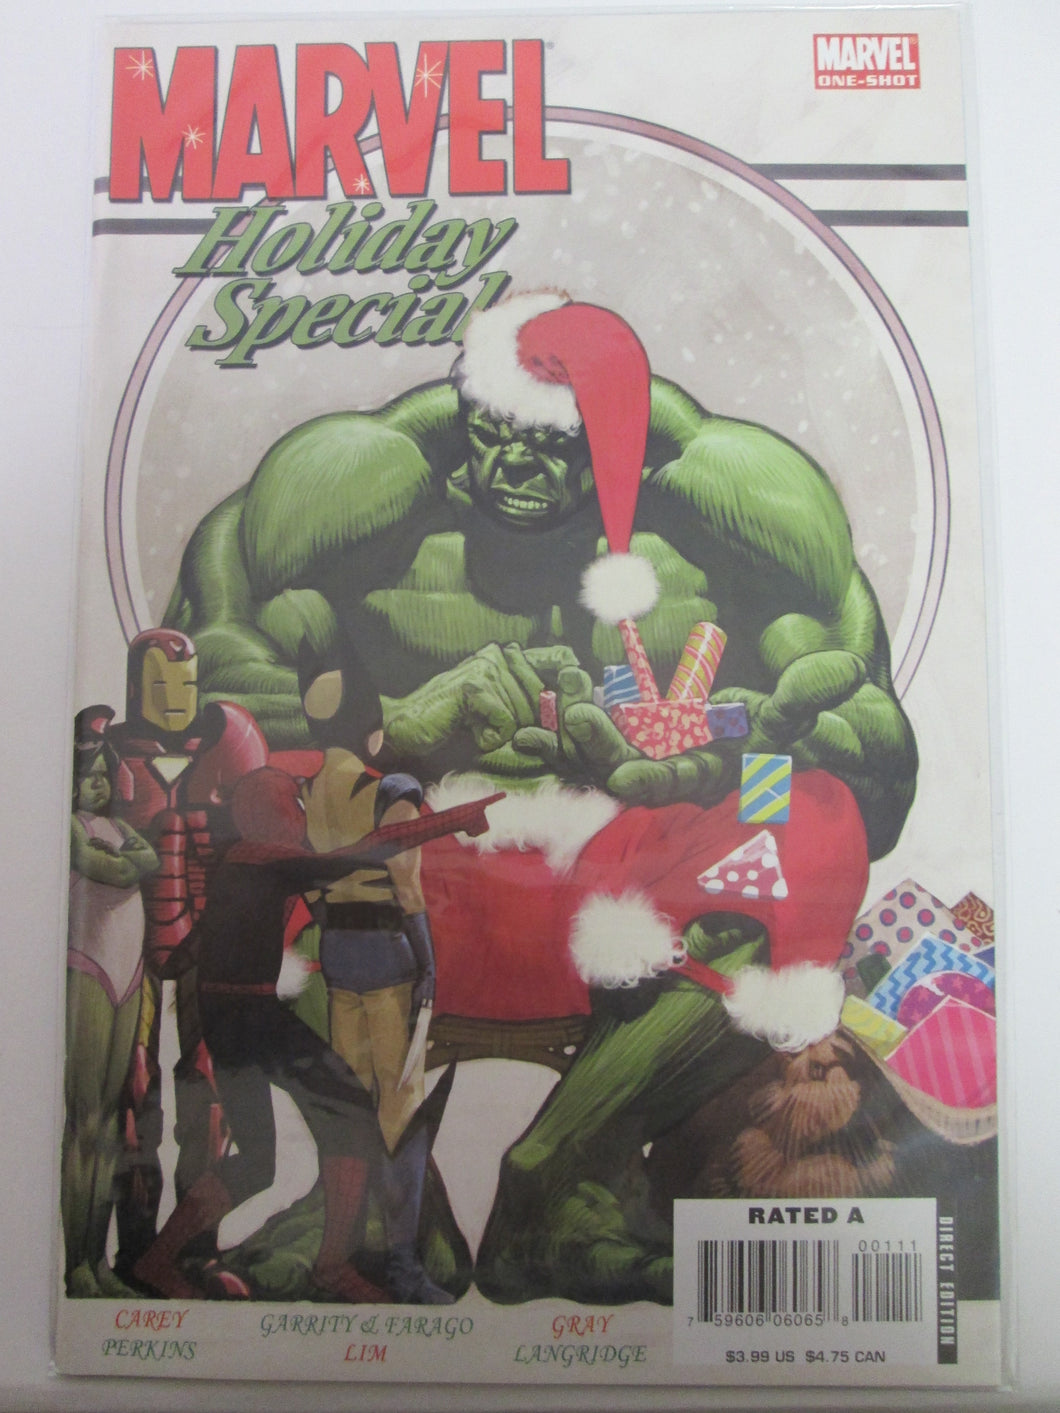 Marvel Holiday Special # 1 (Marvel)